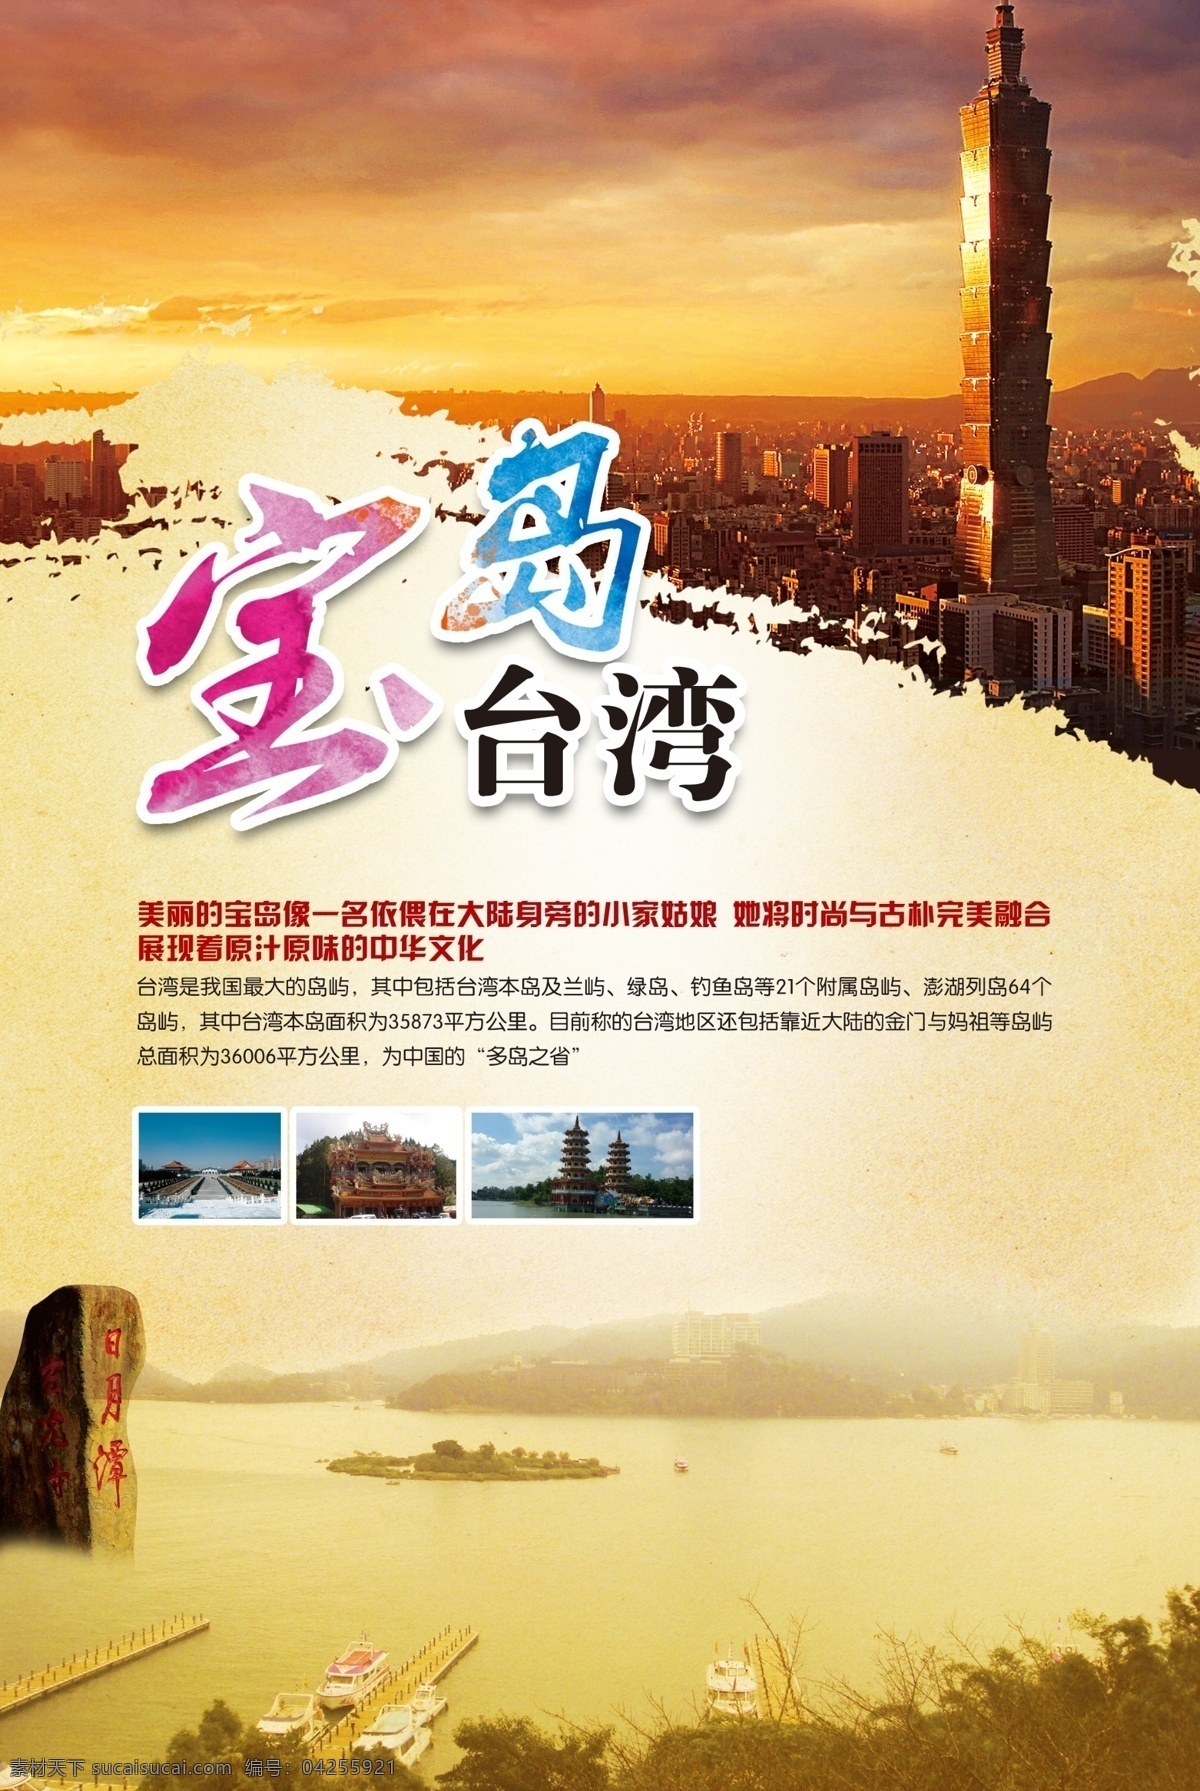 宝岛台湾海报 宝岛台湾风景 台湾景色 台湾旅游景点 台湾展板 台湾 大楼 旅游海报